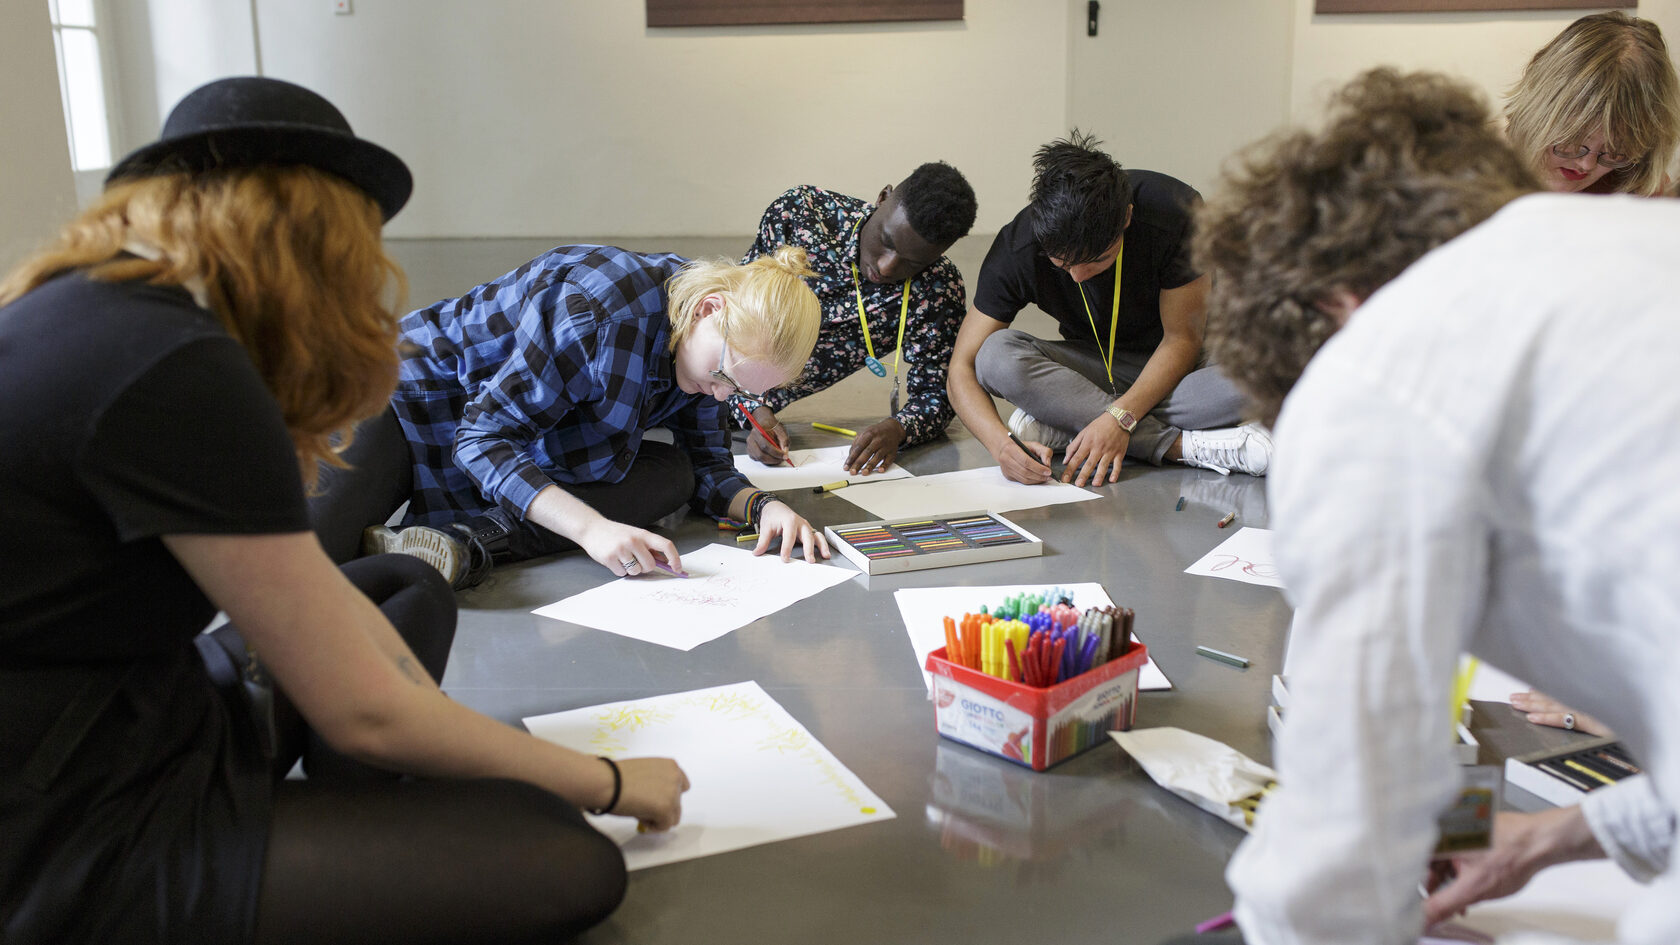 Eine Gruppe von Jugendlichen sitzt auf dem Boden und skizziert Ideen auf weiße Blätter.